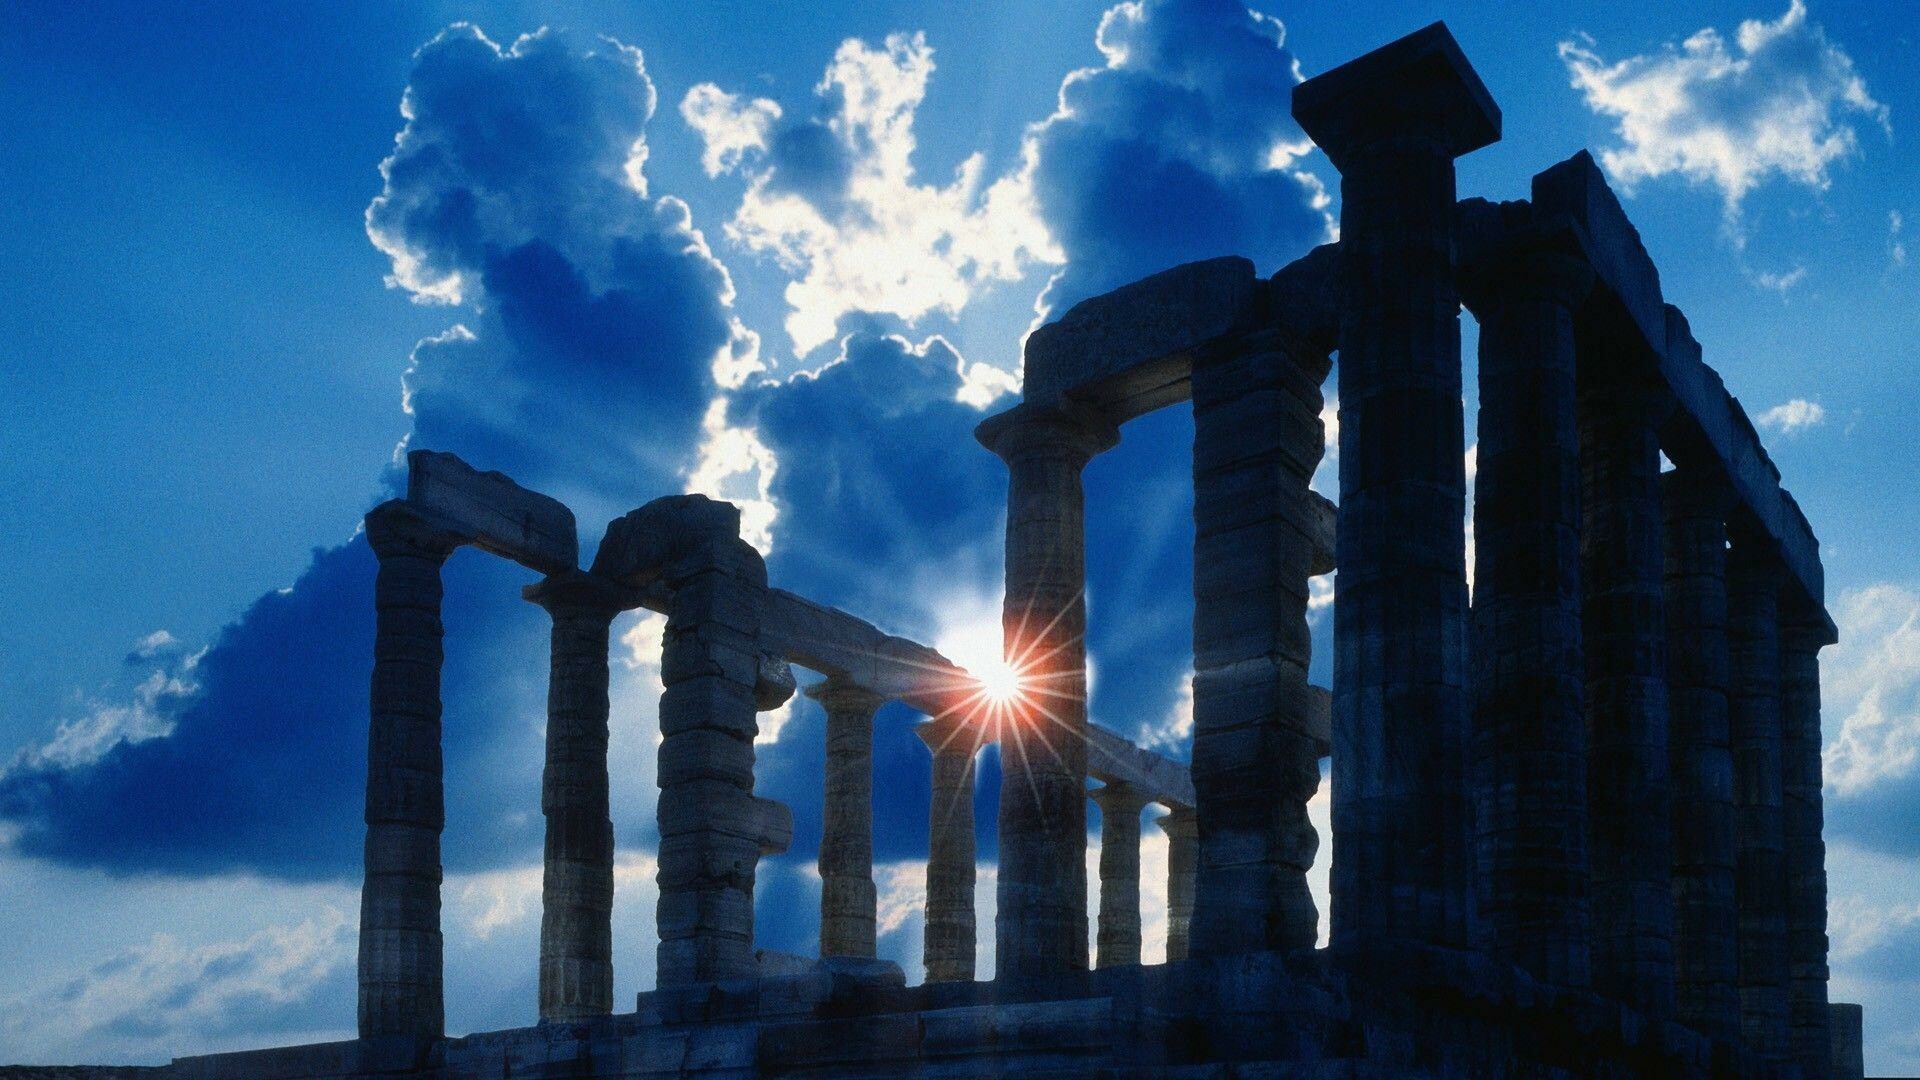 Greece: Ancient Temple of Poseidon, Cape Sounion, Ellada. 1920x1080 Full HD Wallpaper.